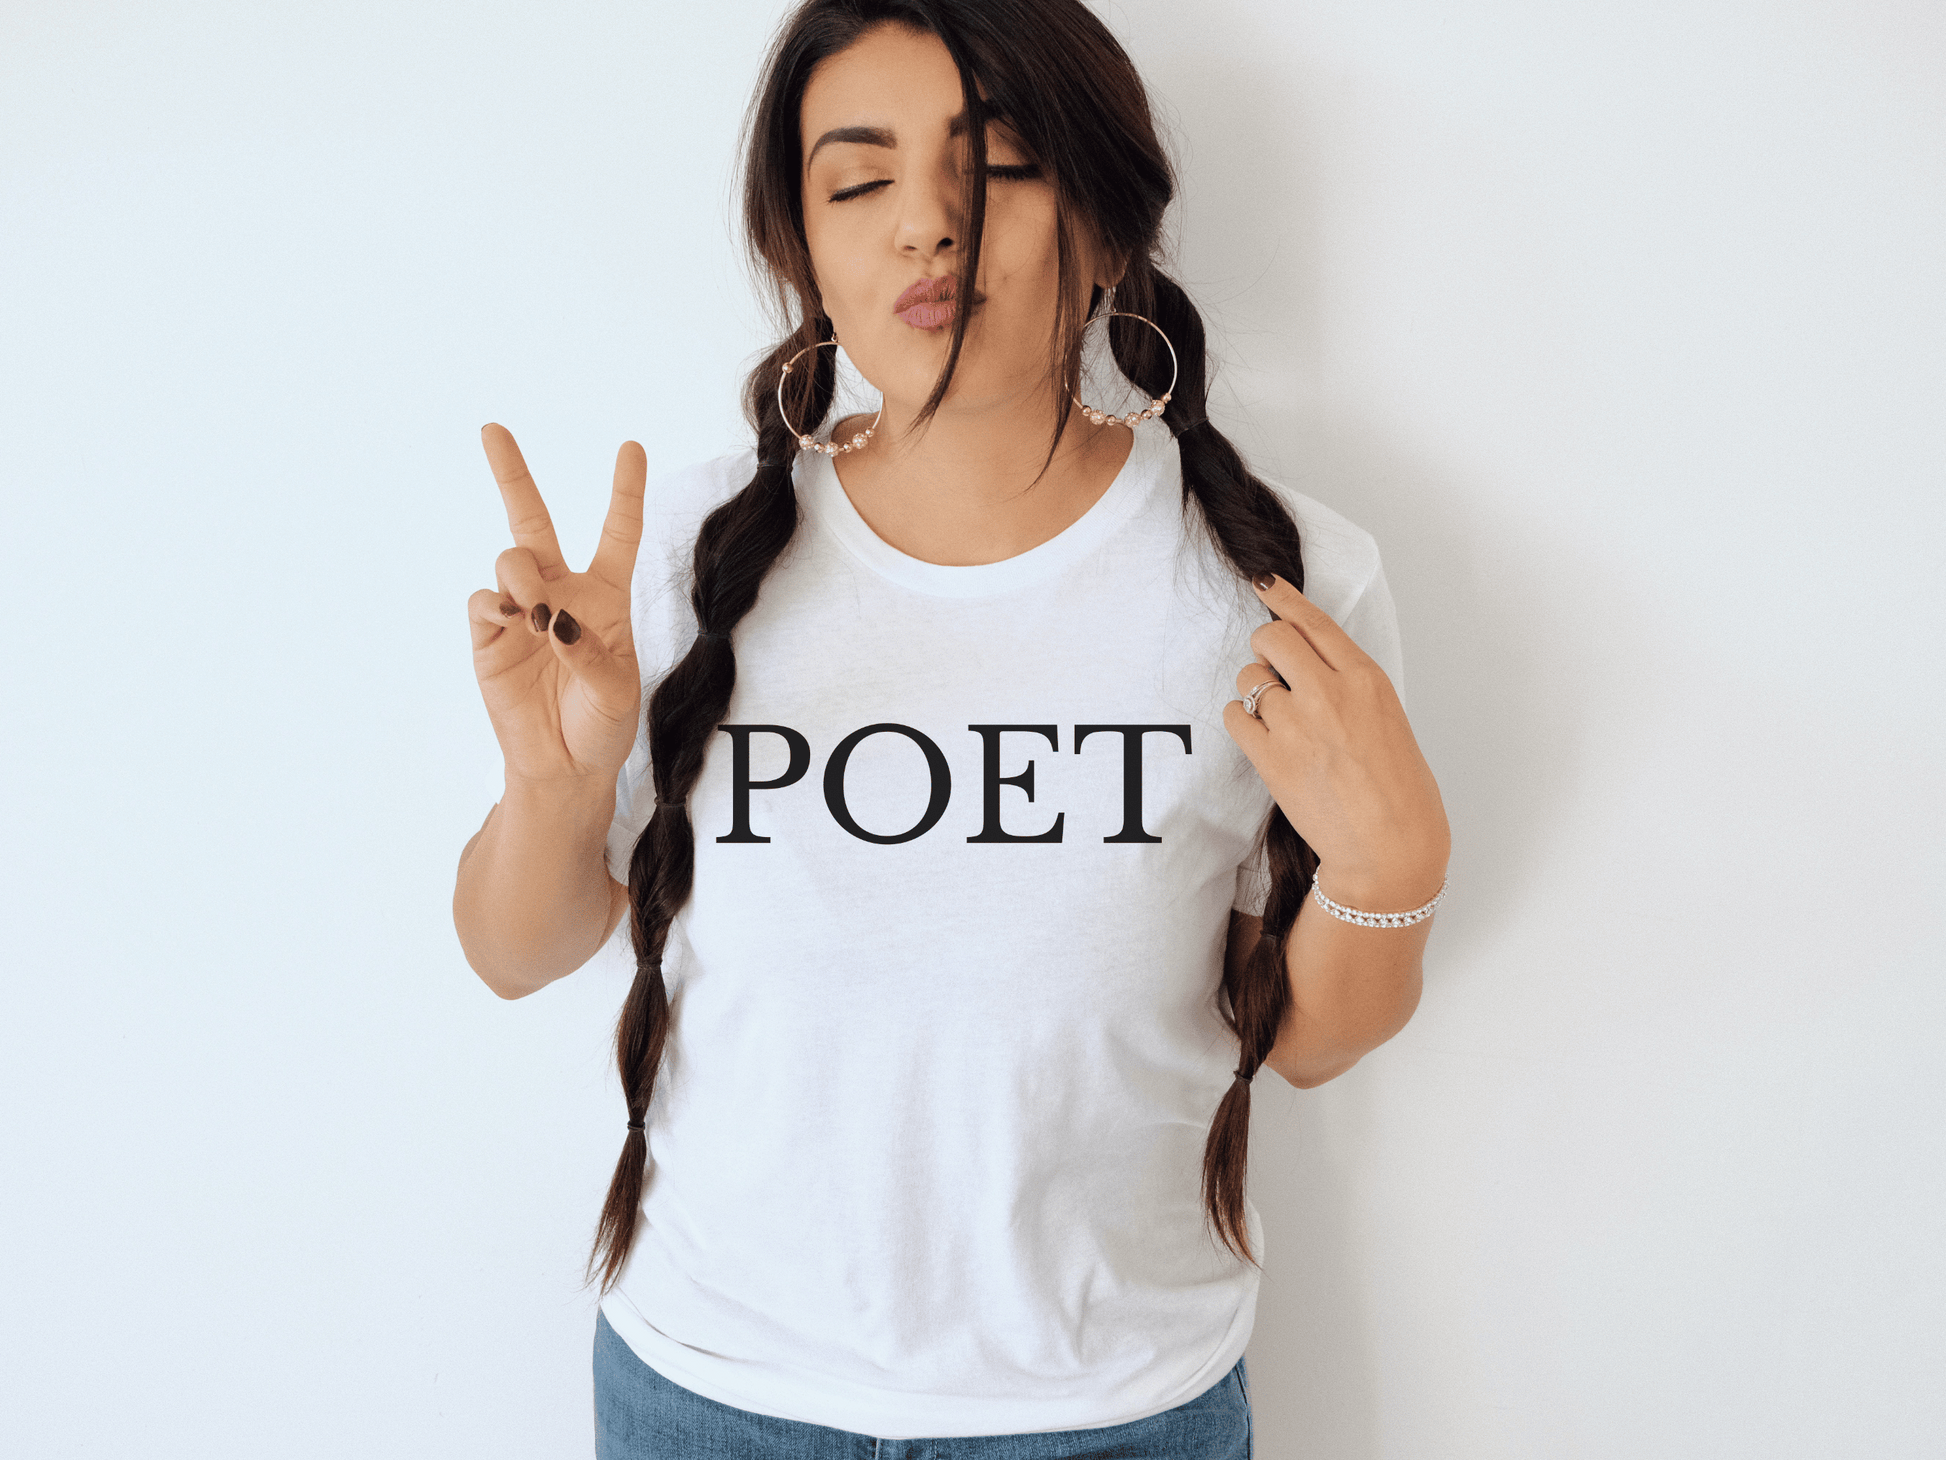 Poet T-Shirt in White